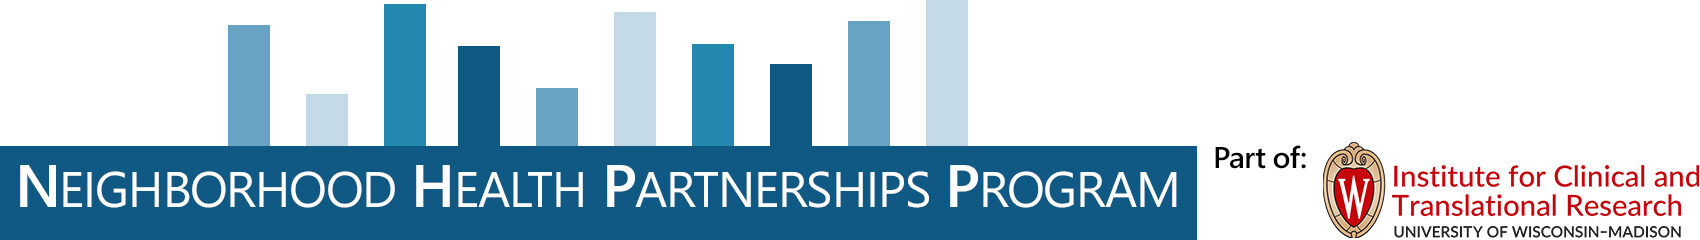 Neighborhood Health Partnerships Program Logo